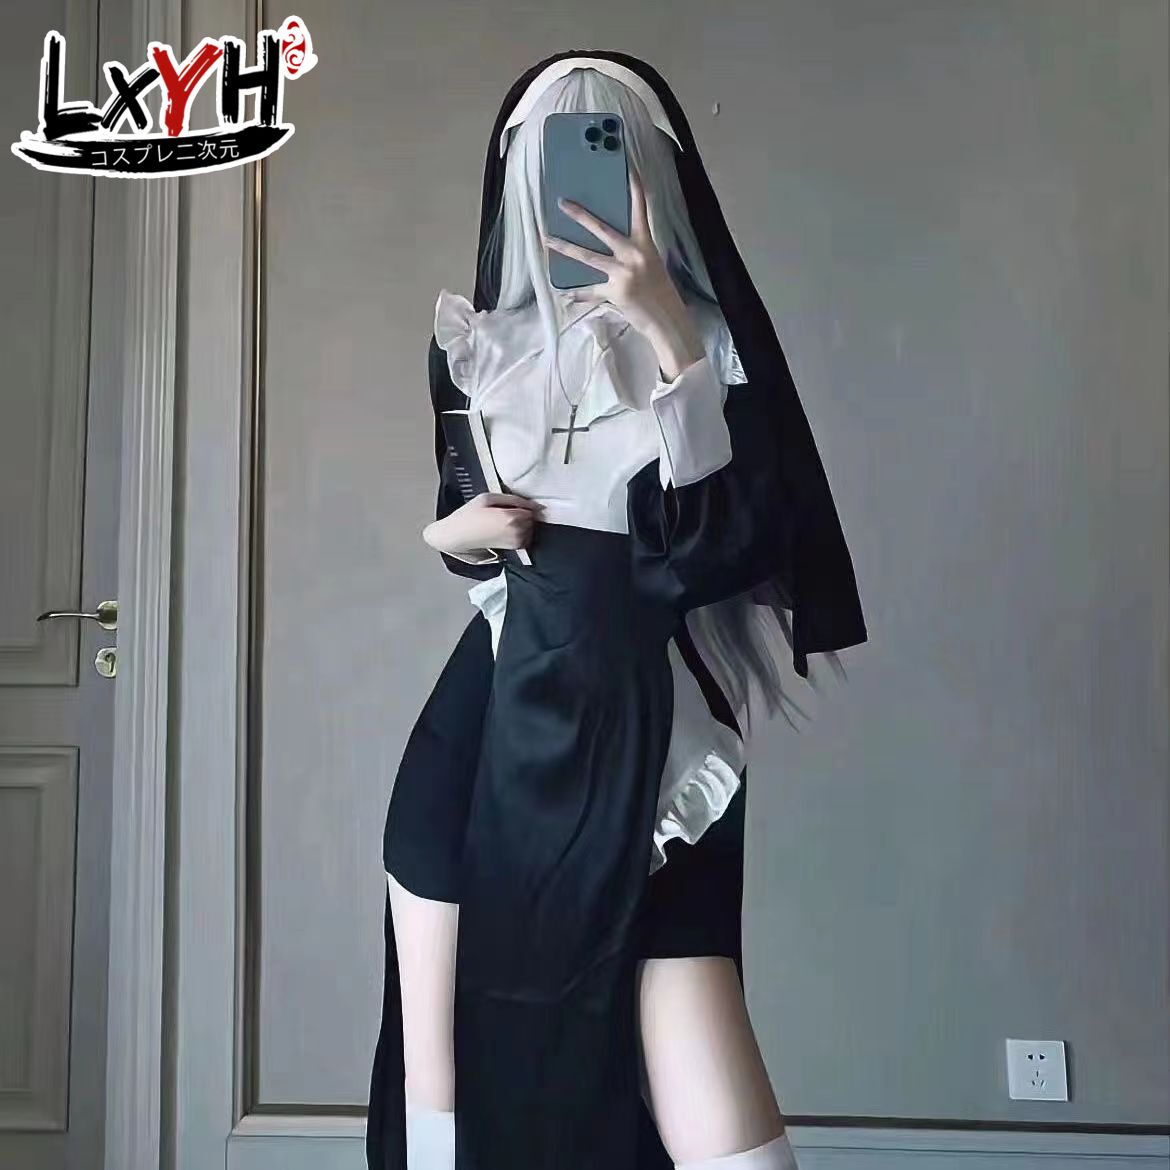 LXYH- COSER KING Nữ tu cosplay gợi cảm chowbie trang phục Halloween đồng